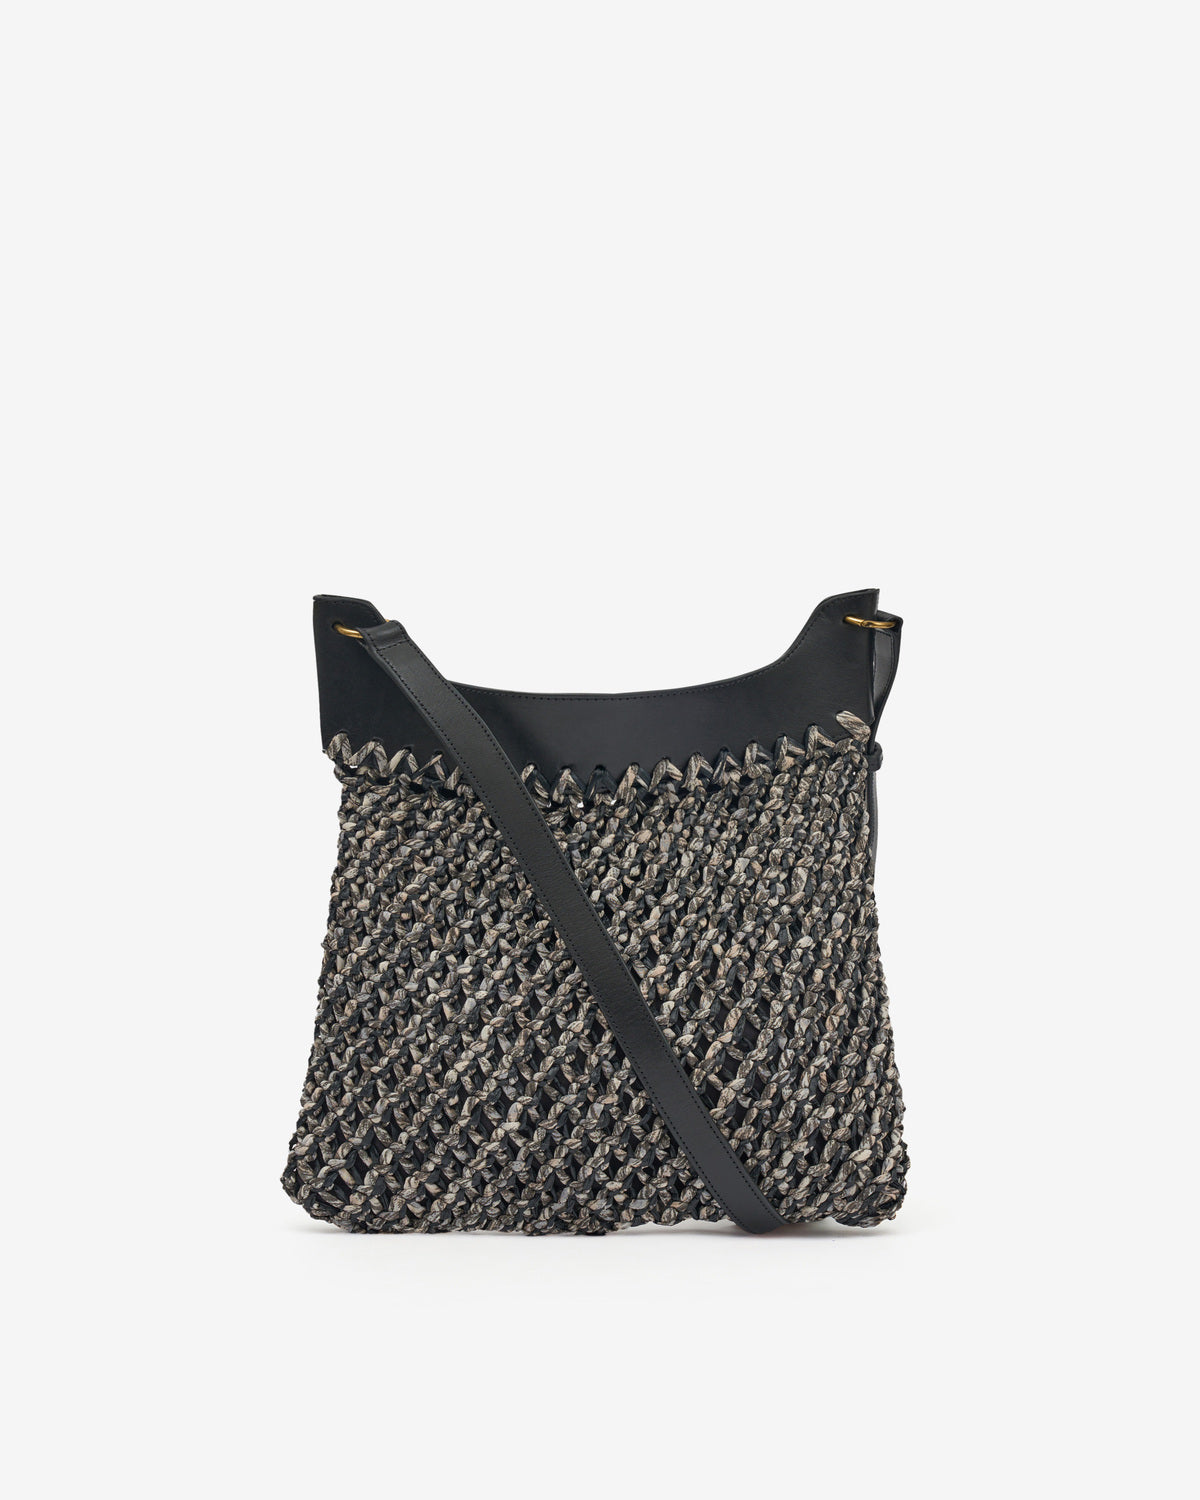 Amalfi hand-woven bag Woman Black 6